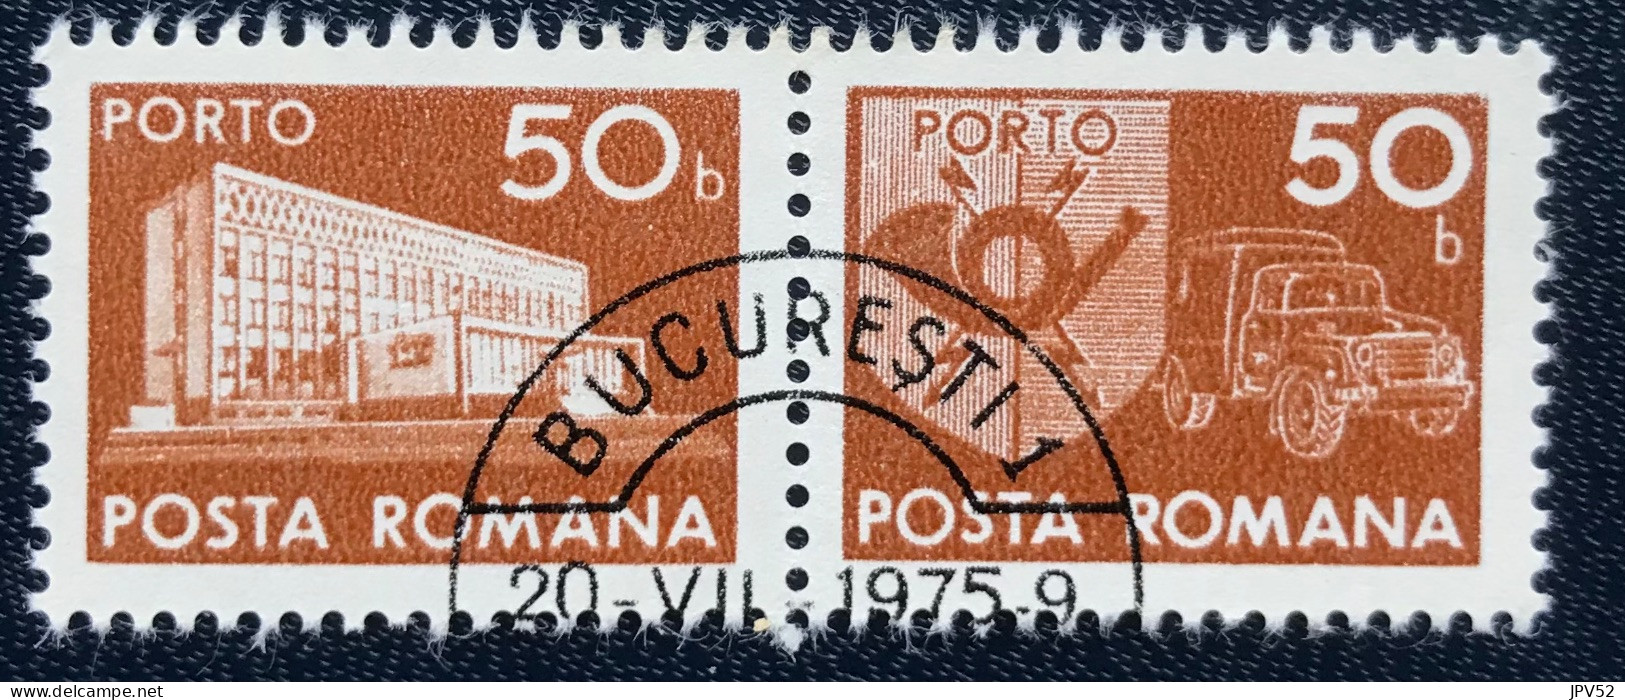 Romana - Roemenië - C14/55 - 1974 - (°)used - Michel 123 - Postkantoor & Postembleem & Postvoertuig - BUCURESTI - Impuestos